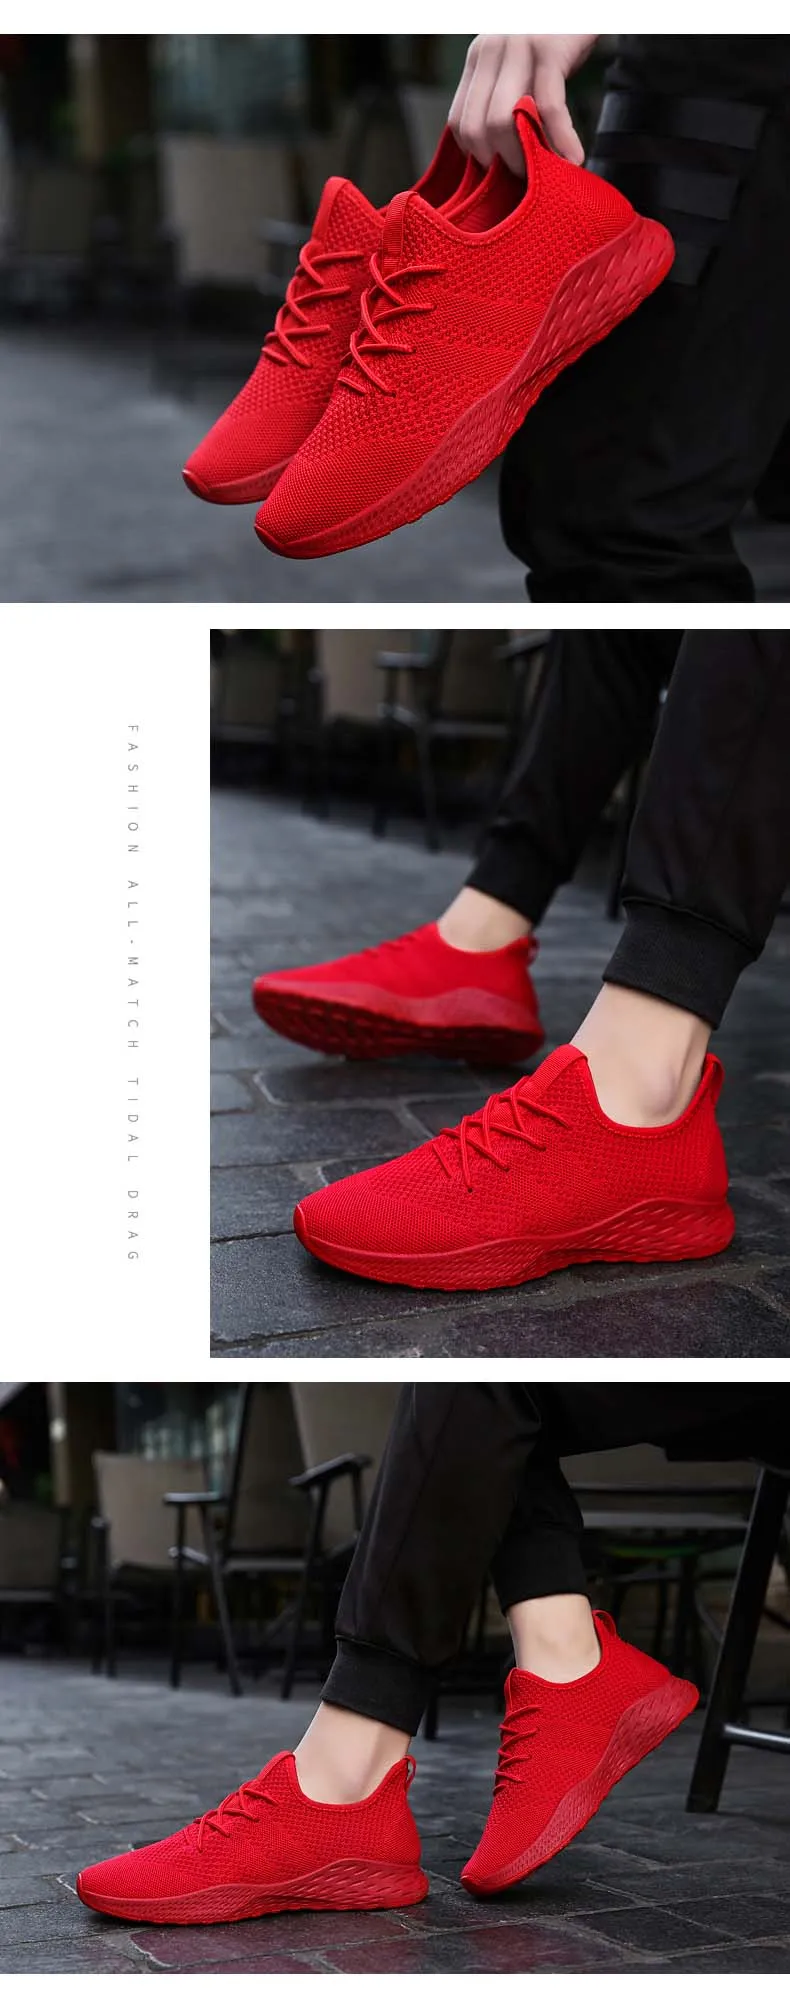 BomKinta дешевые красные кроссовки женские мужские дизайн кроссовки Легкие беговые кроссовки спортивная обувь дышащая сетка zapatillas Большие размеры 48